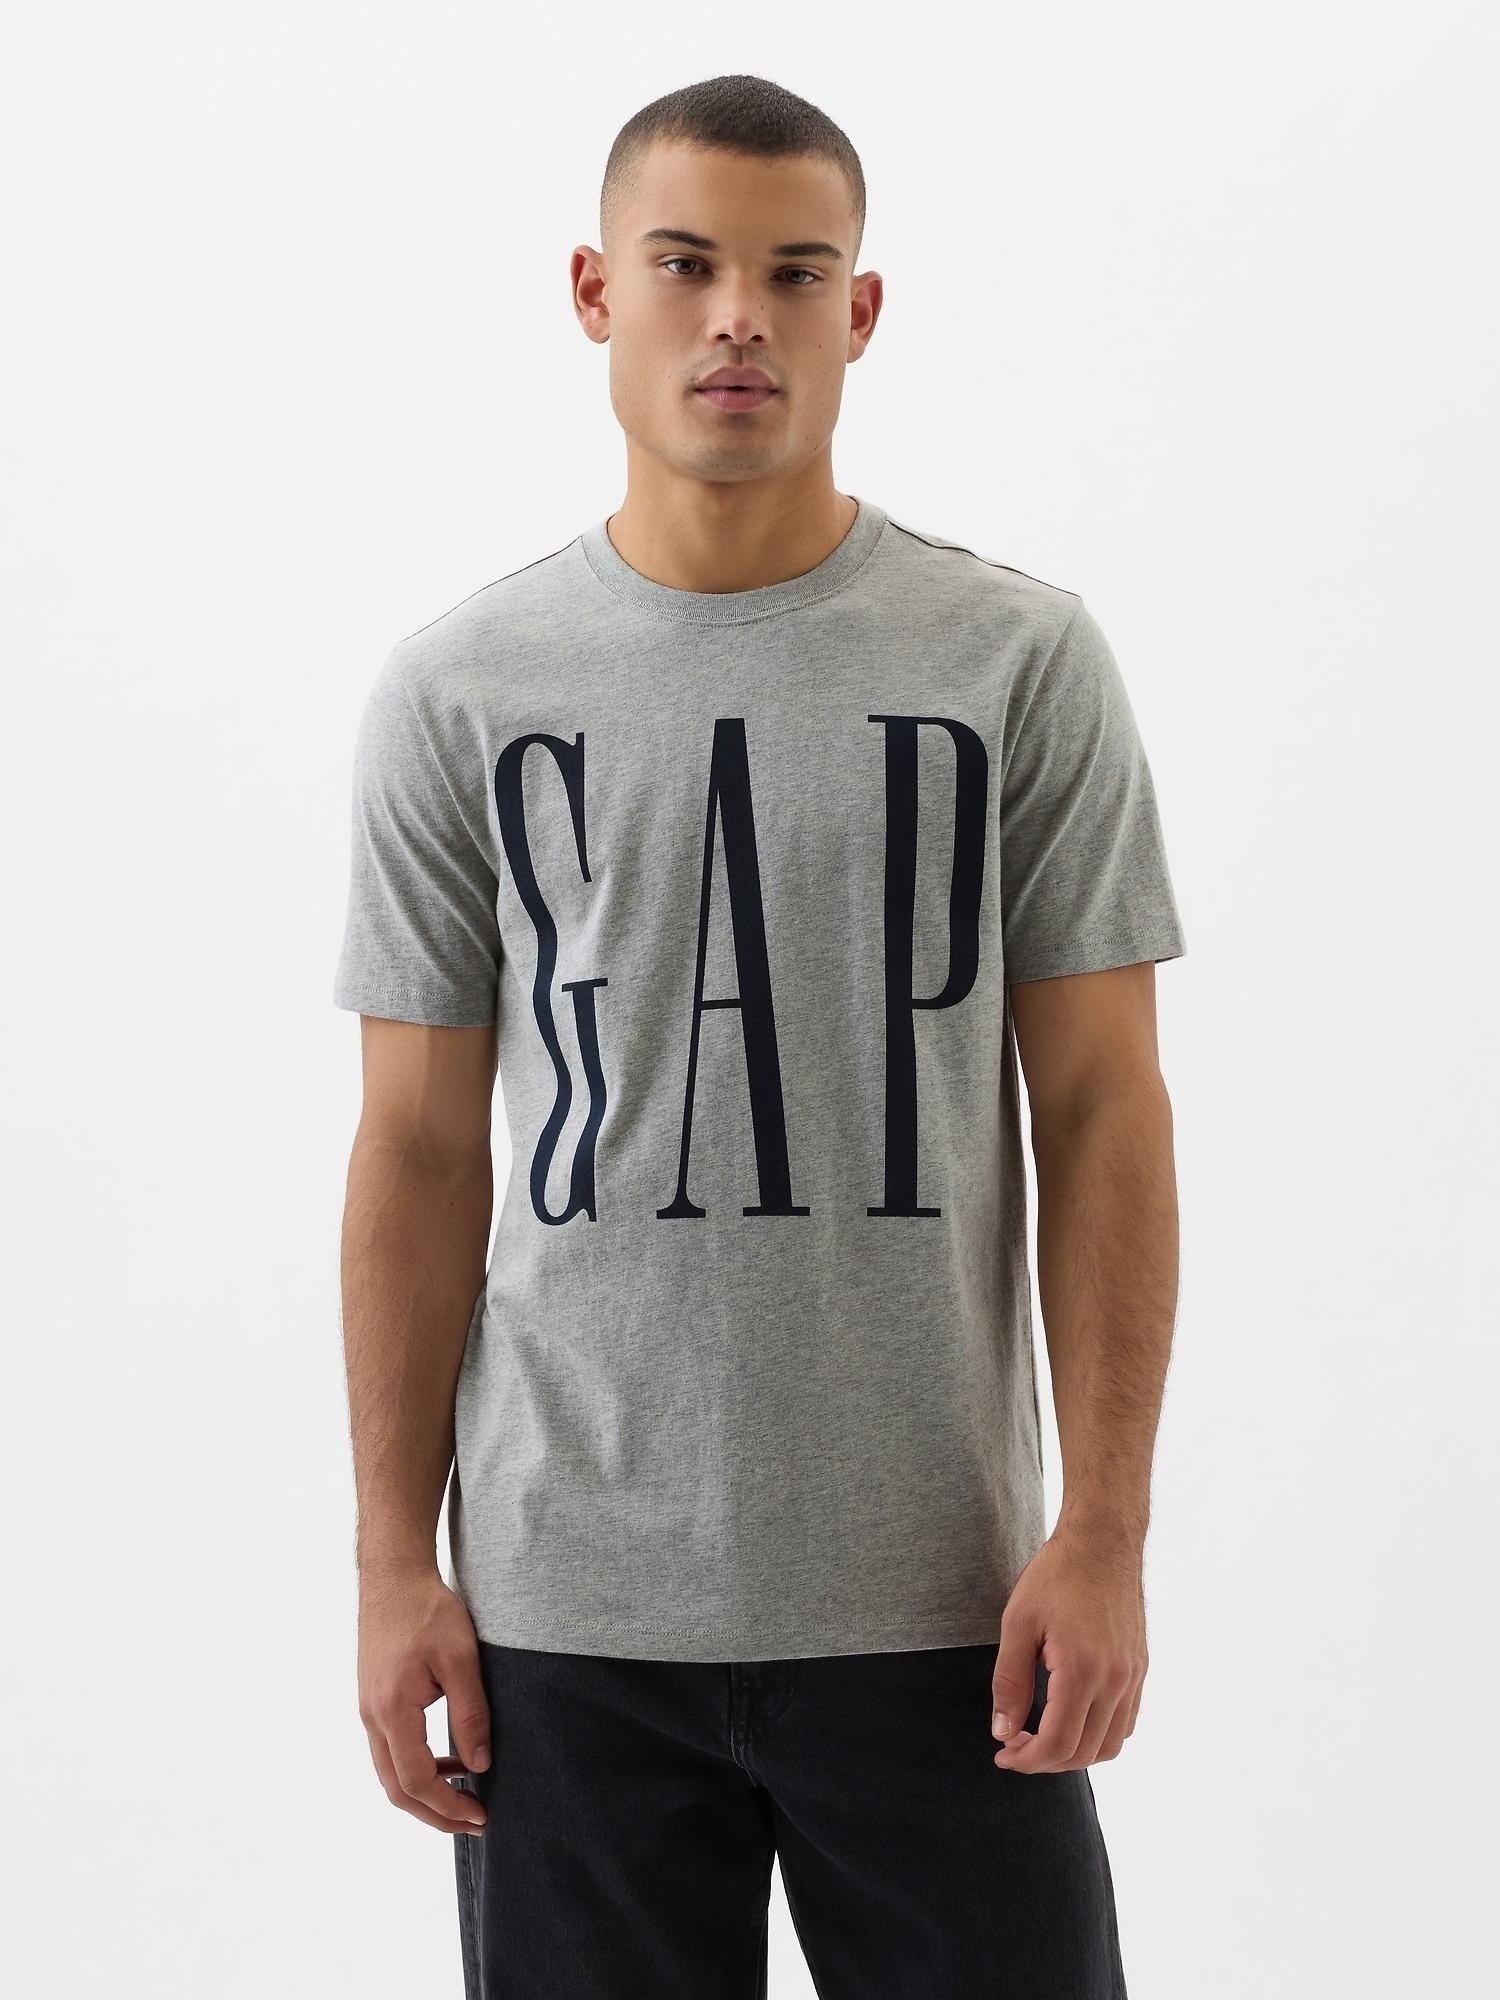 Everyday Soft Gap Logo T-Shirt product image